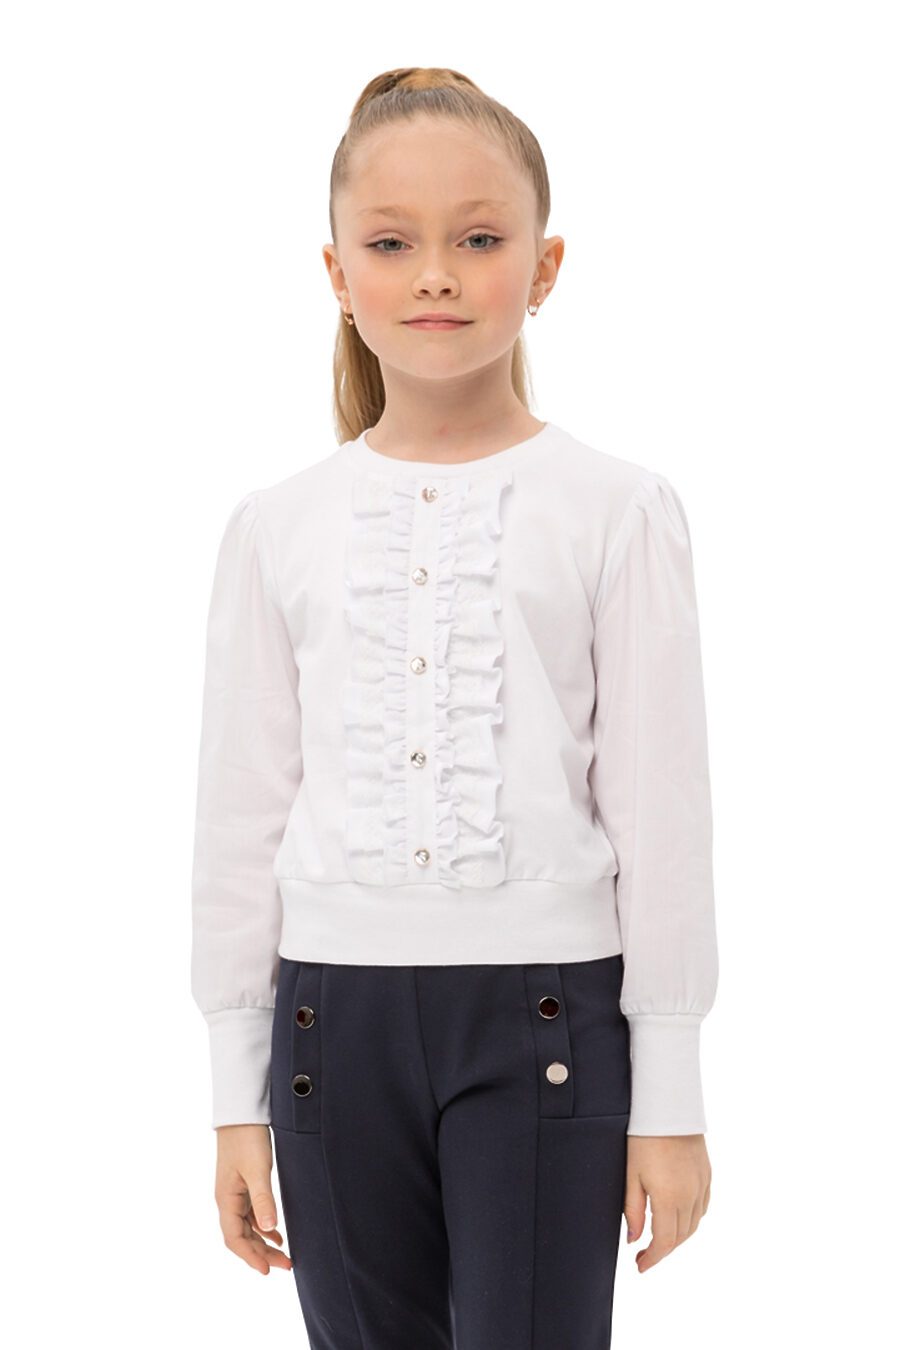 Блуза КАРАМЕЛЛИ (683323), купить в Moyo.moda